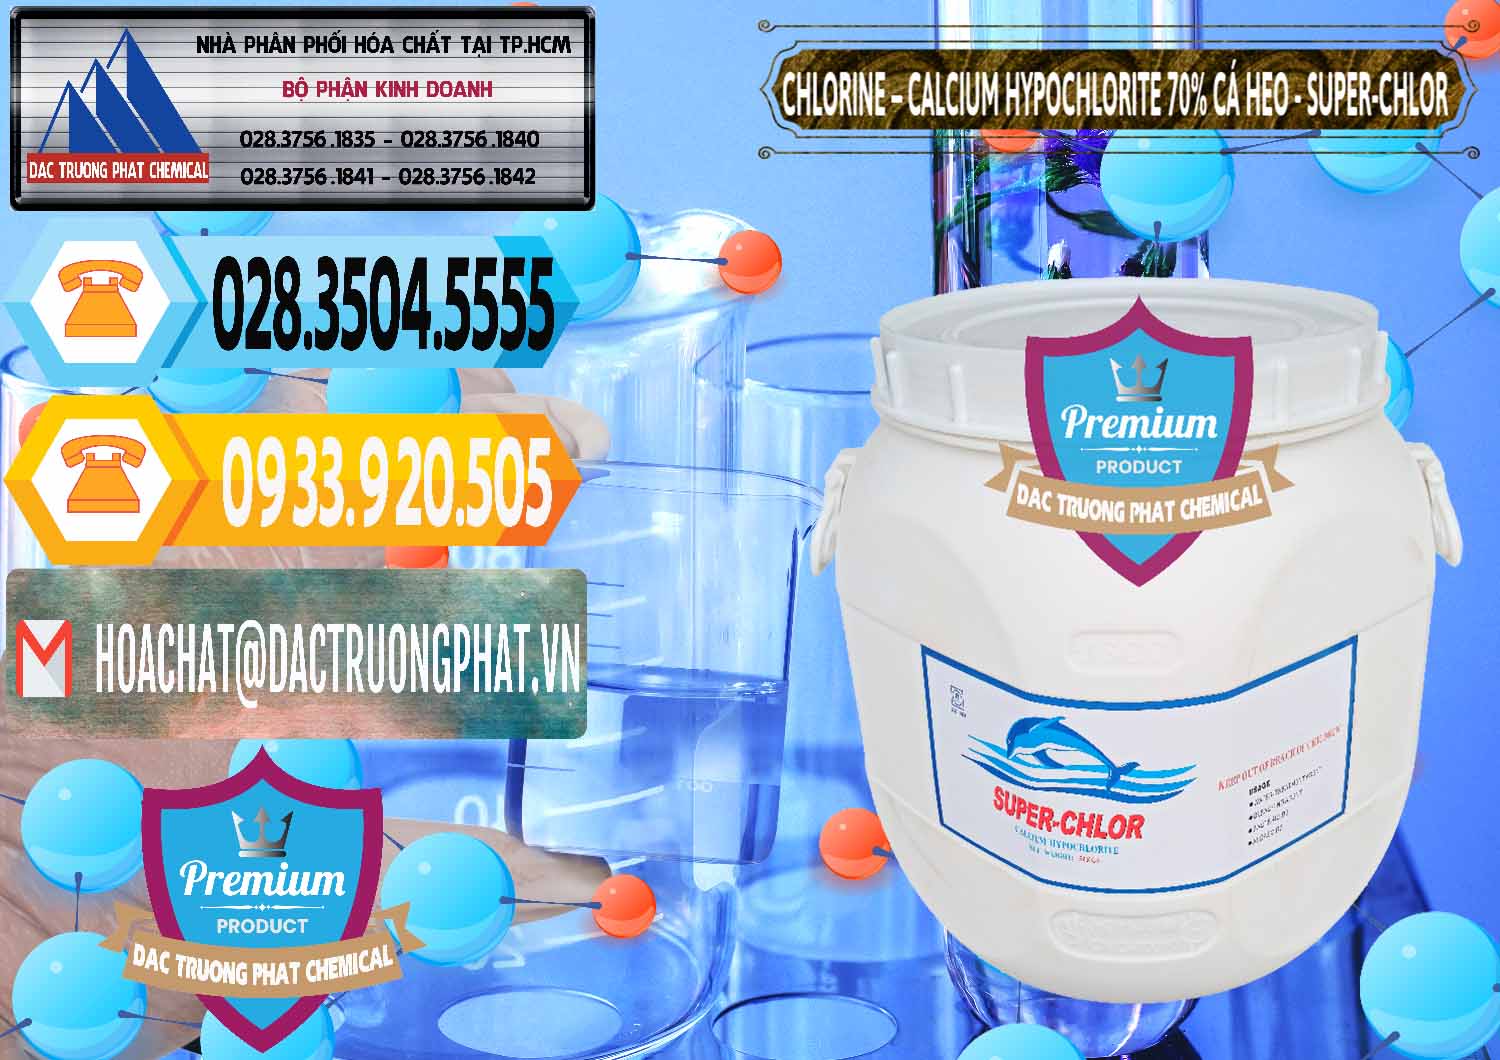 Cty chuyên cung cấp _ bán Clorin - Chlorine Cá Heo 70% Super Chlor Trung Quốc China - 0058 - Cty chuyên cung ứng và phân phối hóa chất tại TP.HCM - hoachattayrua.net